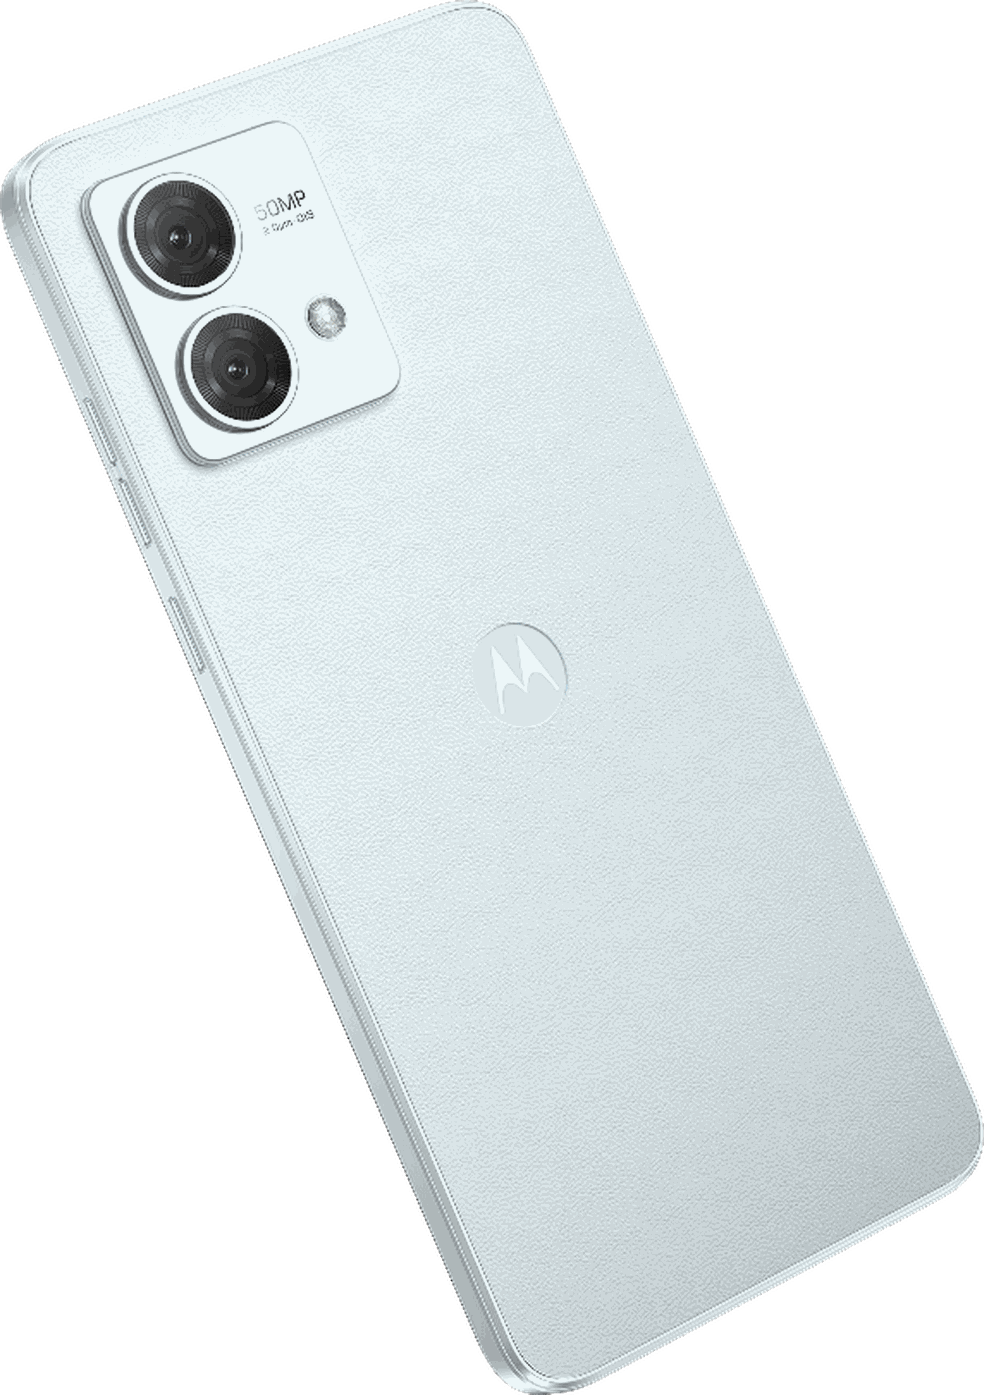 Motorola Moto G84 5G - Ficha Técnica - Canaltech